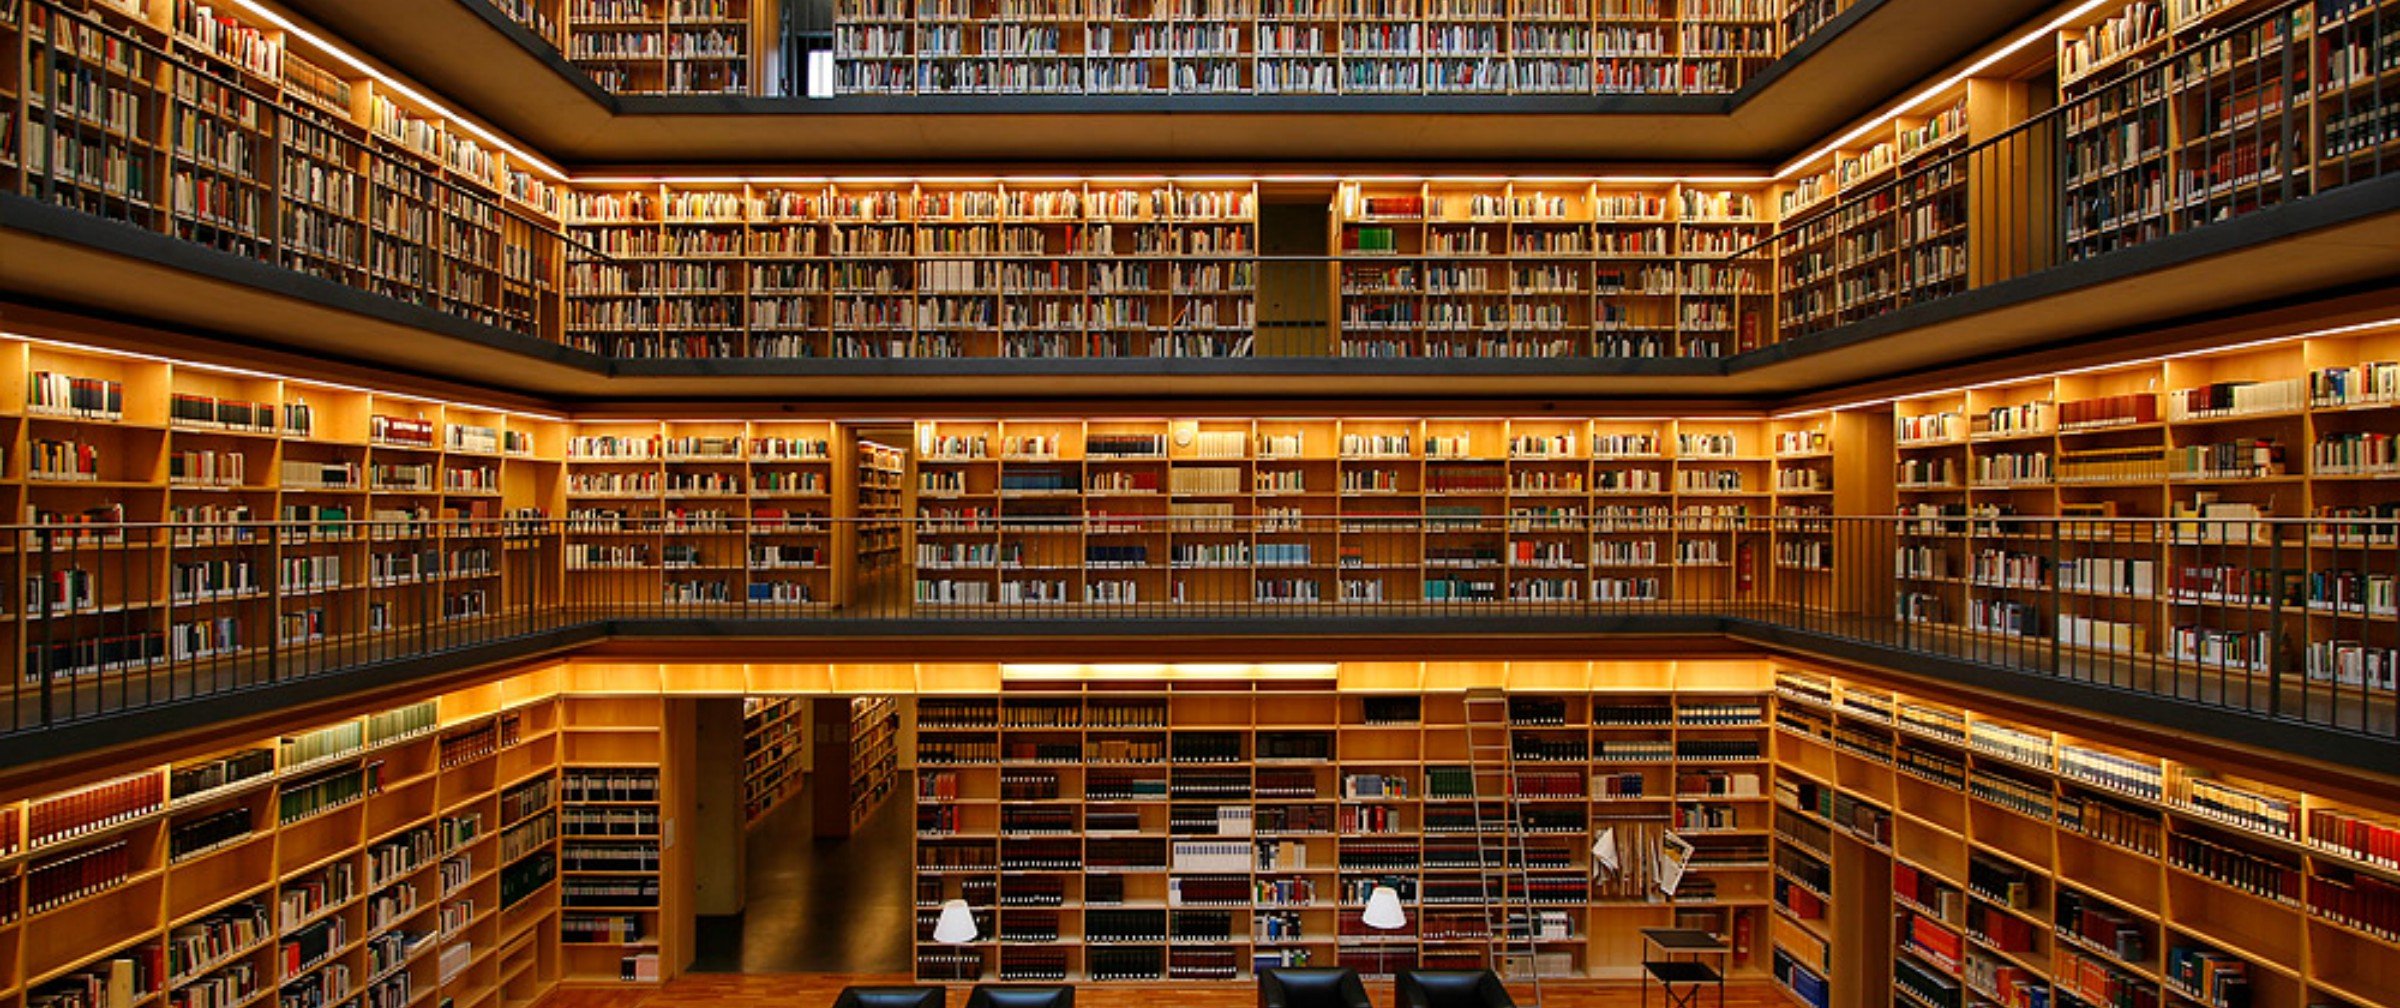 Cc library. 19-Ярусное книгохранилище РГБ. Библиотека Phillips Exeter. Красивая библиотека. Большая библиотека.